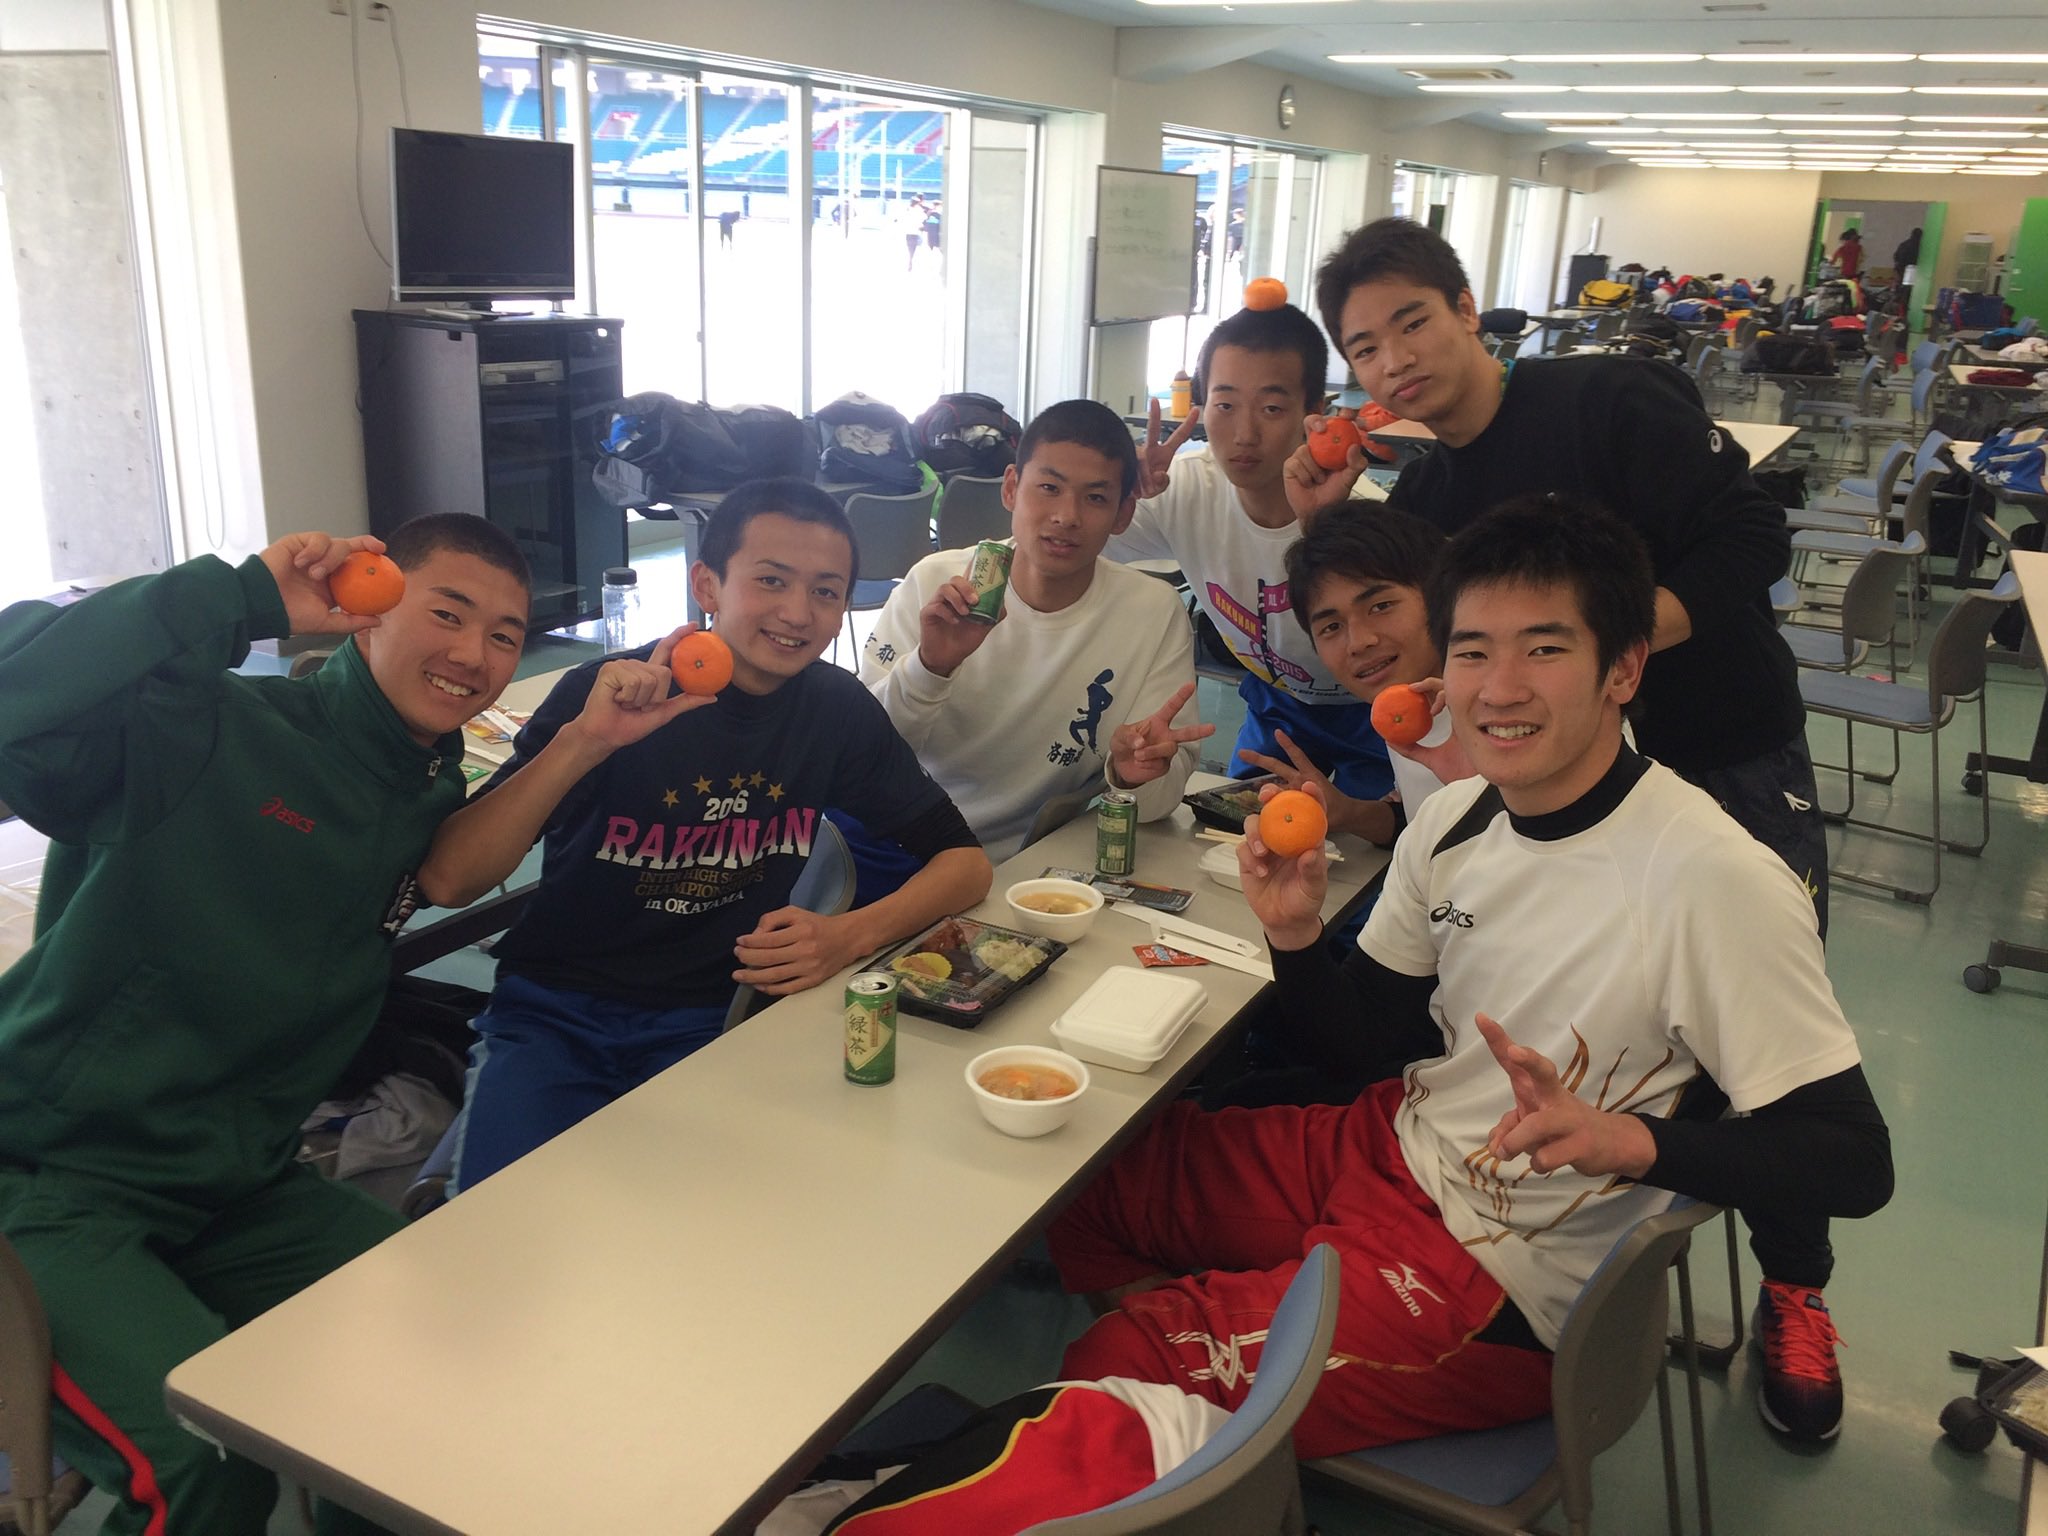 合宿では日本トップクラスの選手たちから多くの刺激をもらった